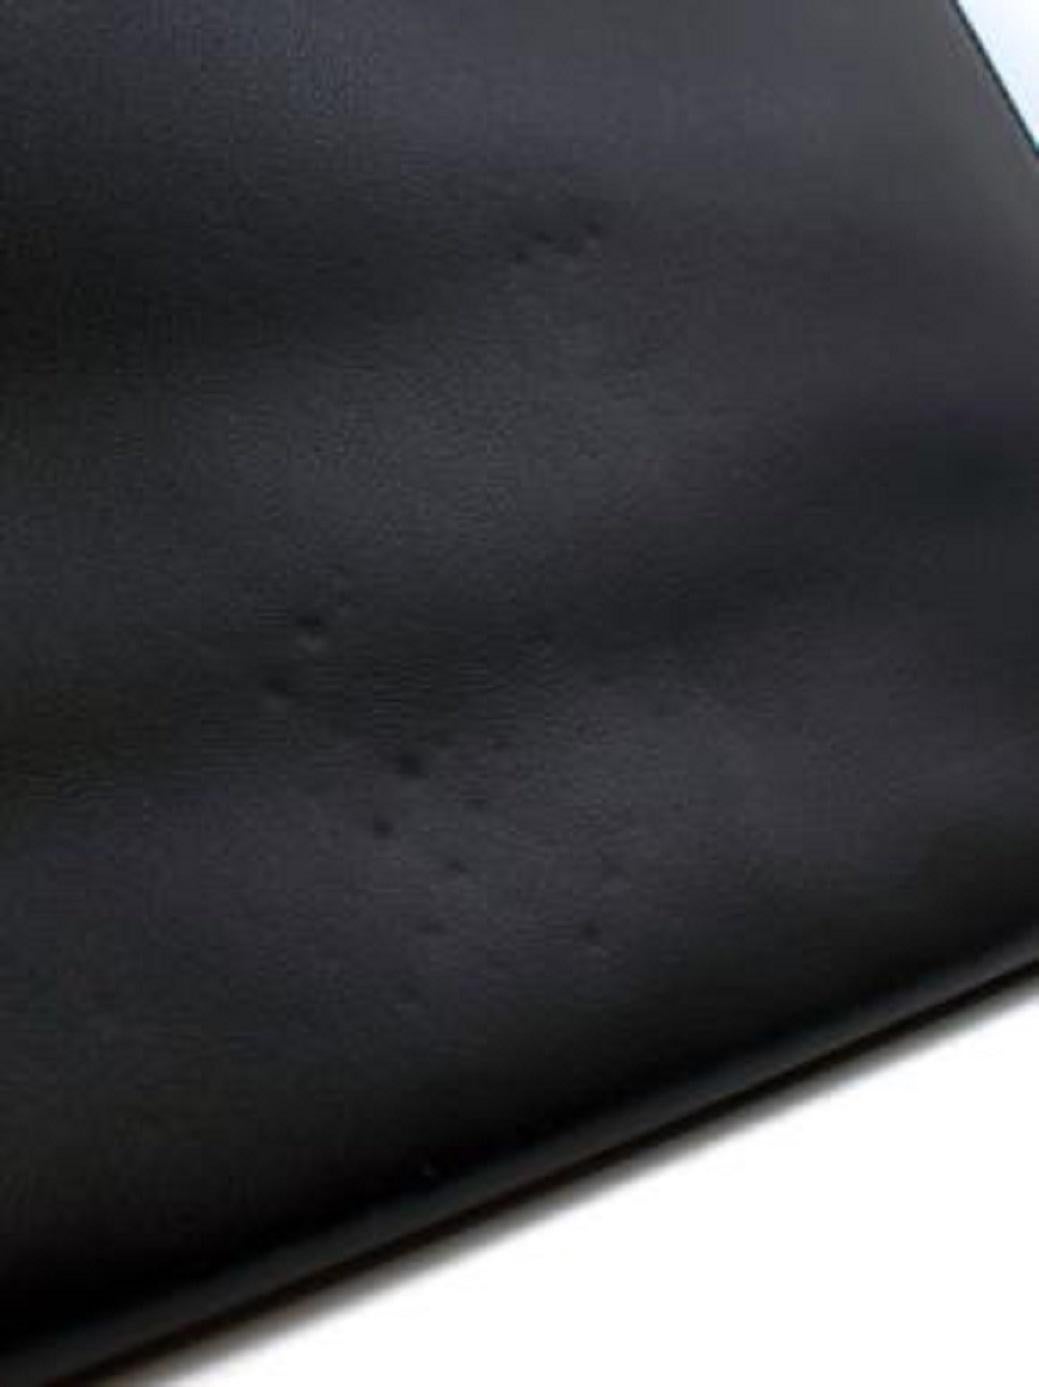 Saint Laurent Black Leather Zip Pouch For Sale 4